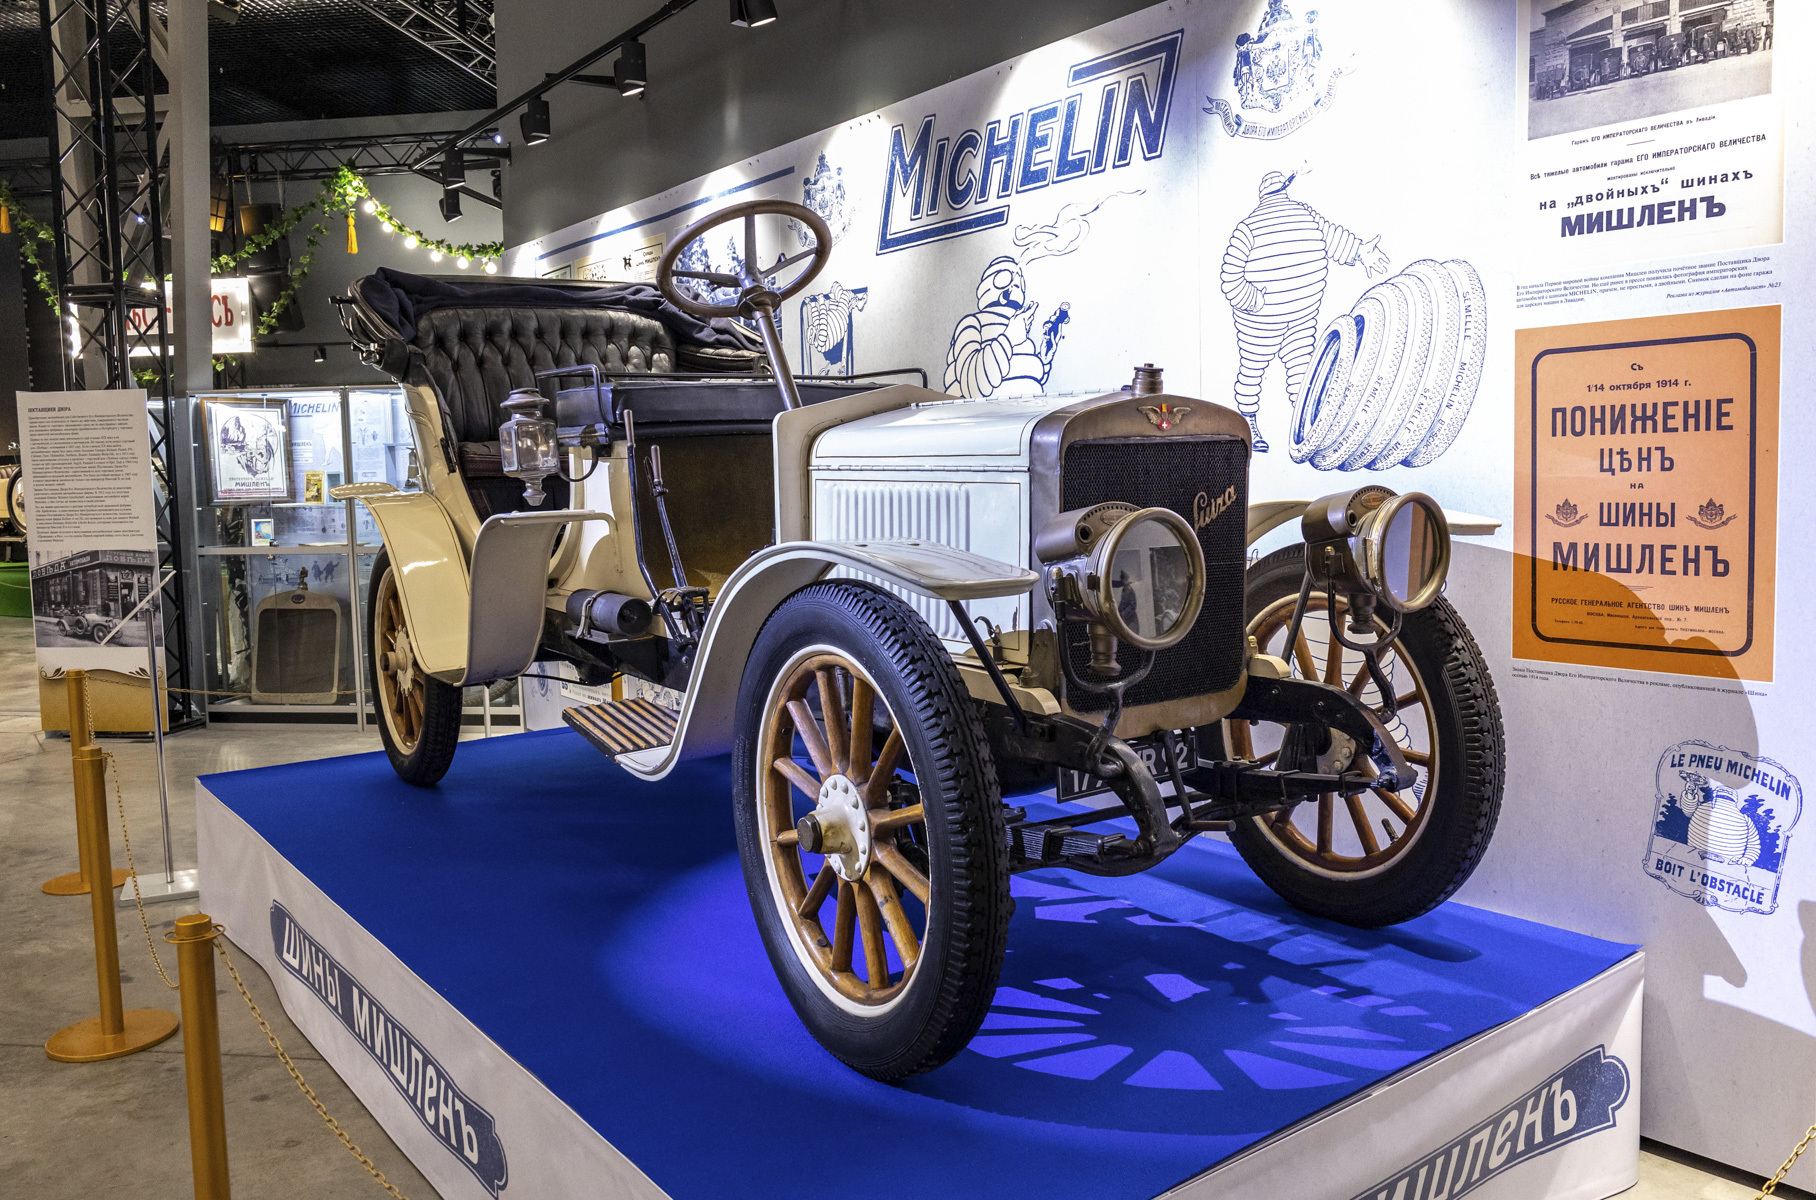 Hispano-Suiza стала известна в России благодаря участию в большом автопробеге 1912 года.